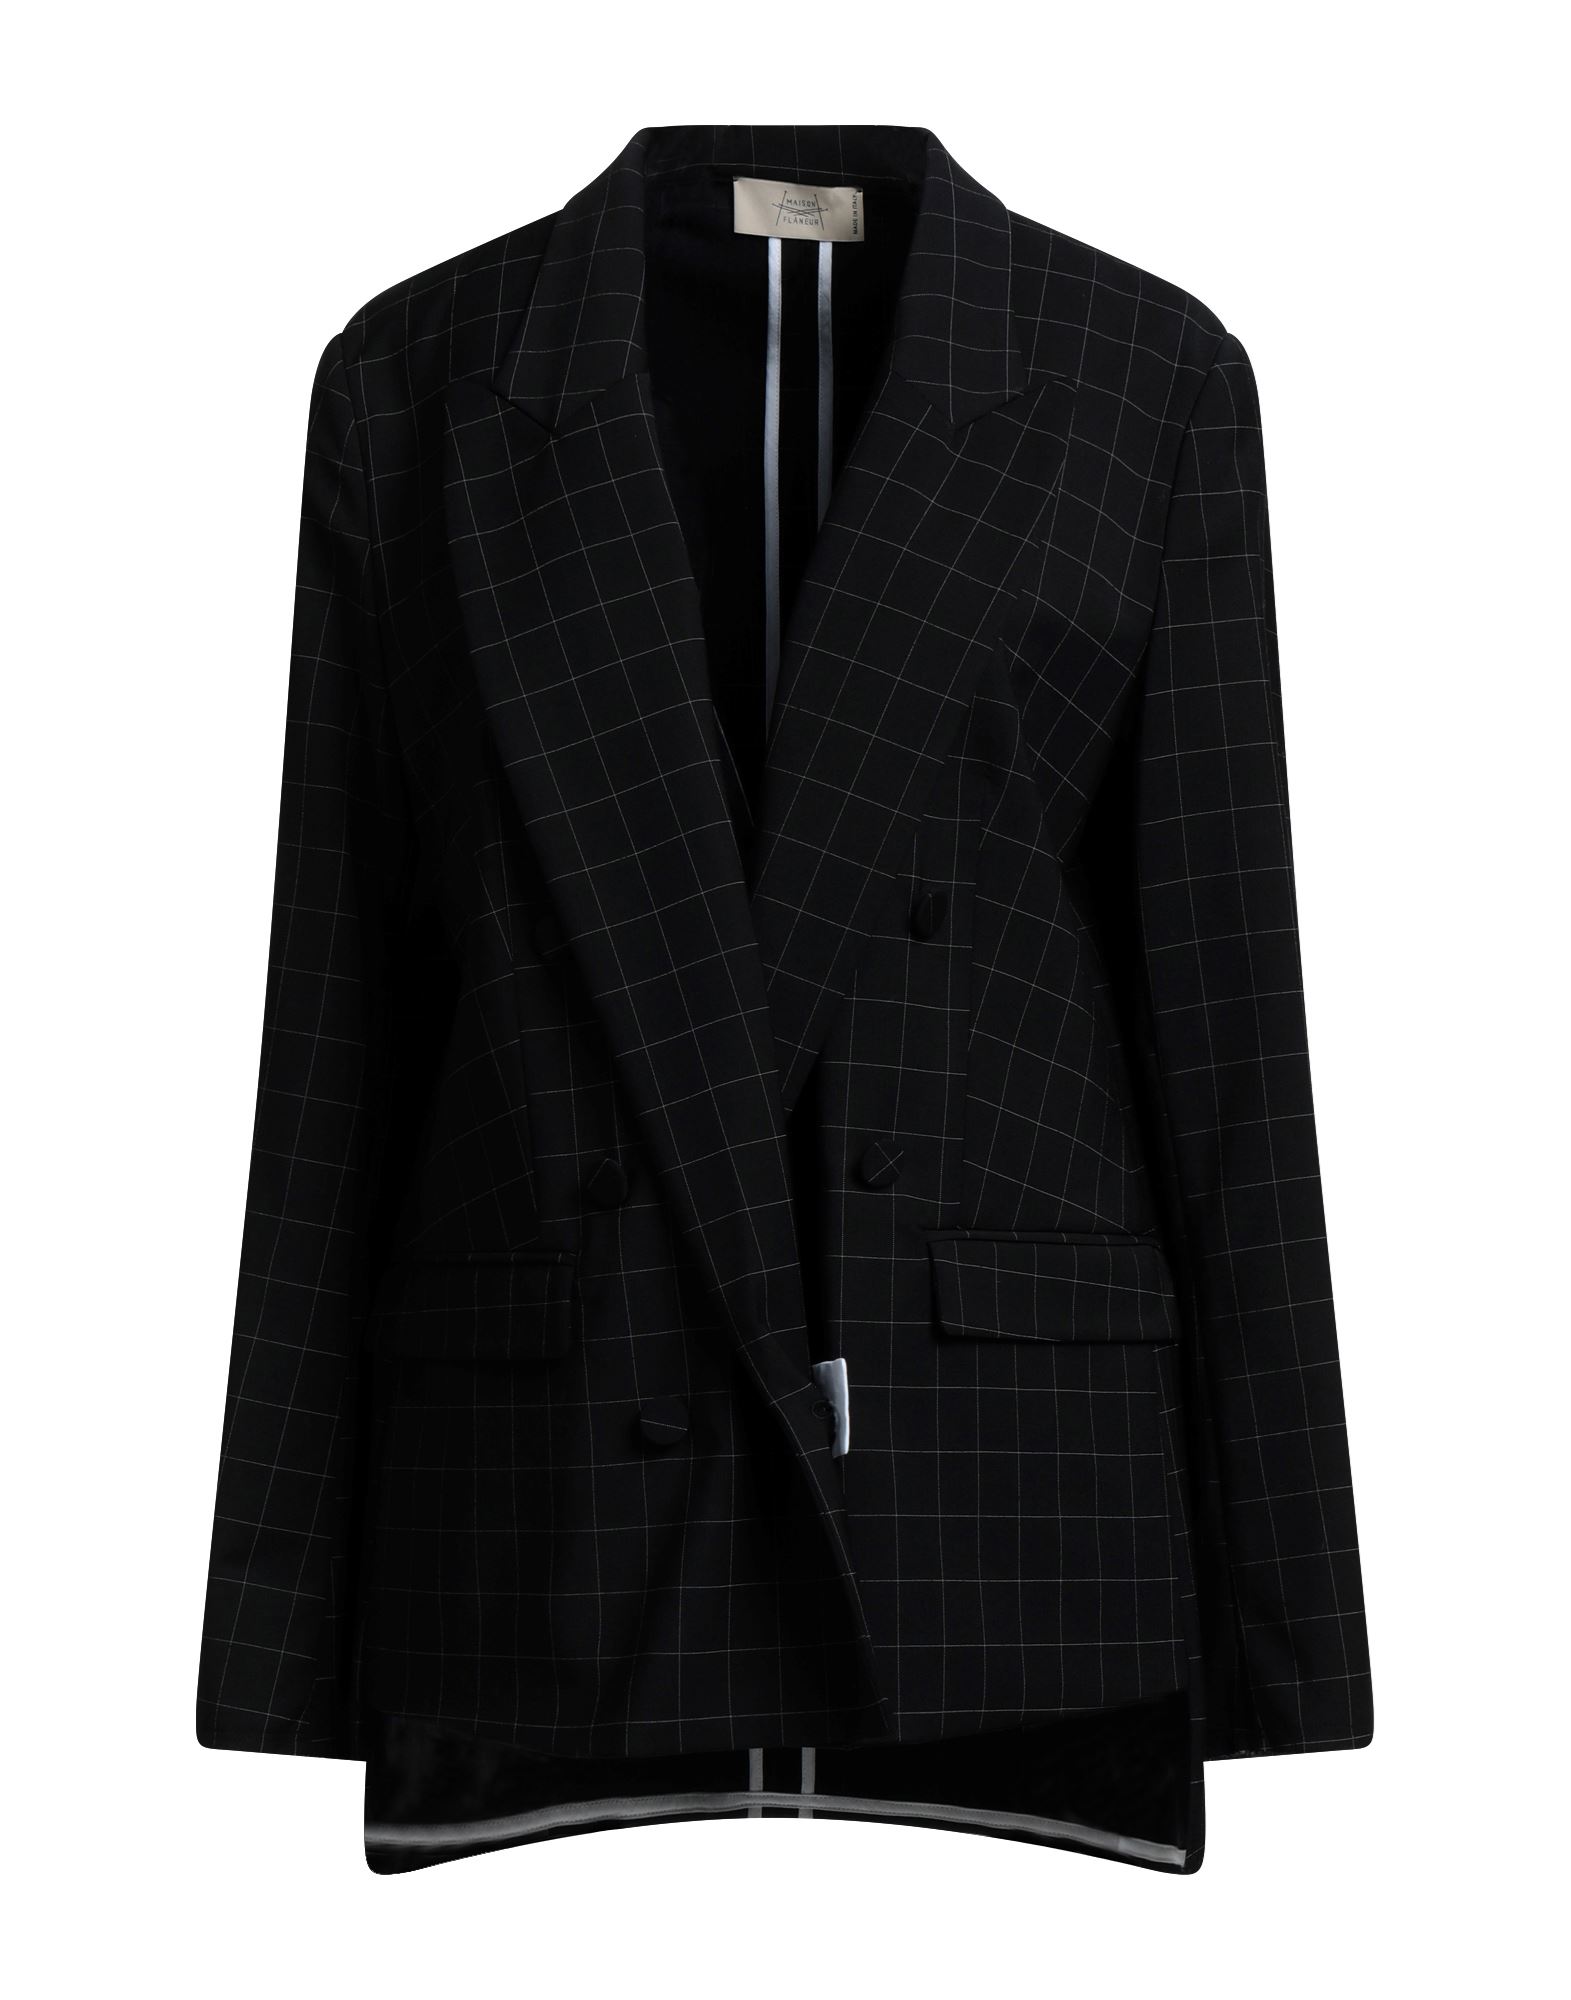 Maison Fl Neur Suit Jackets In Black